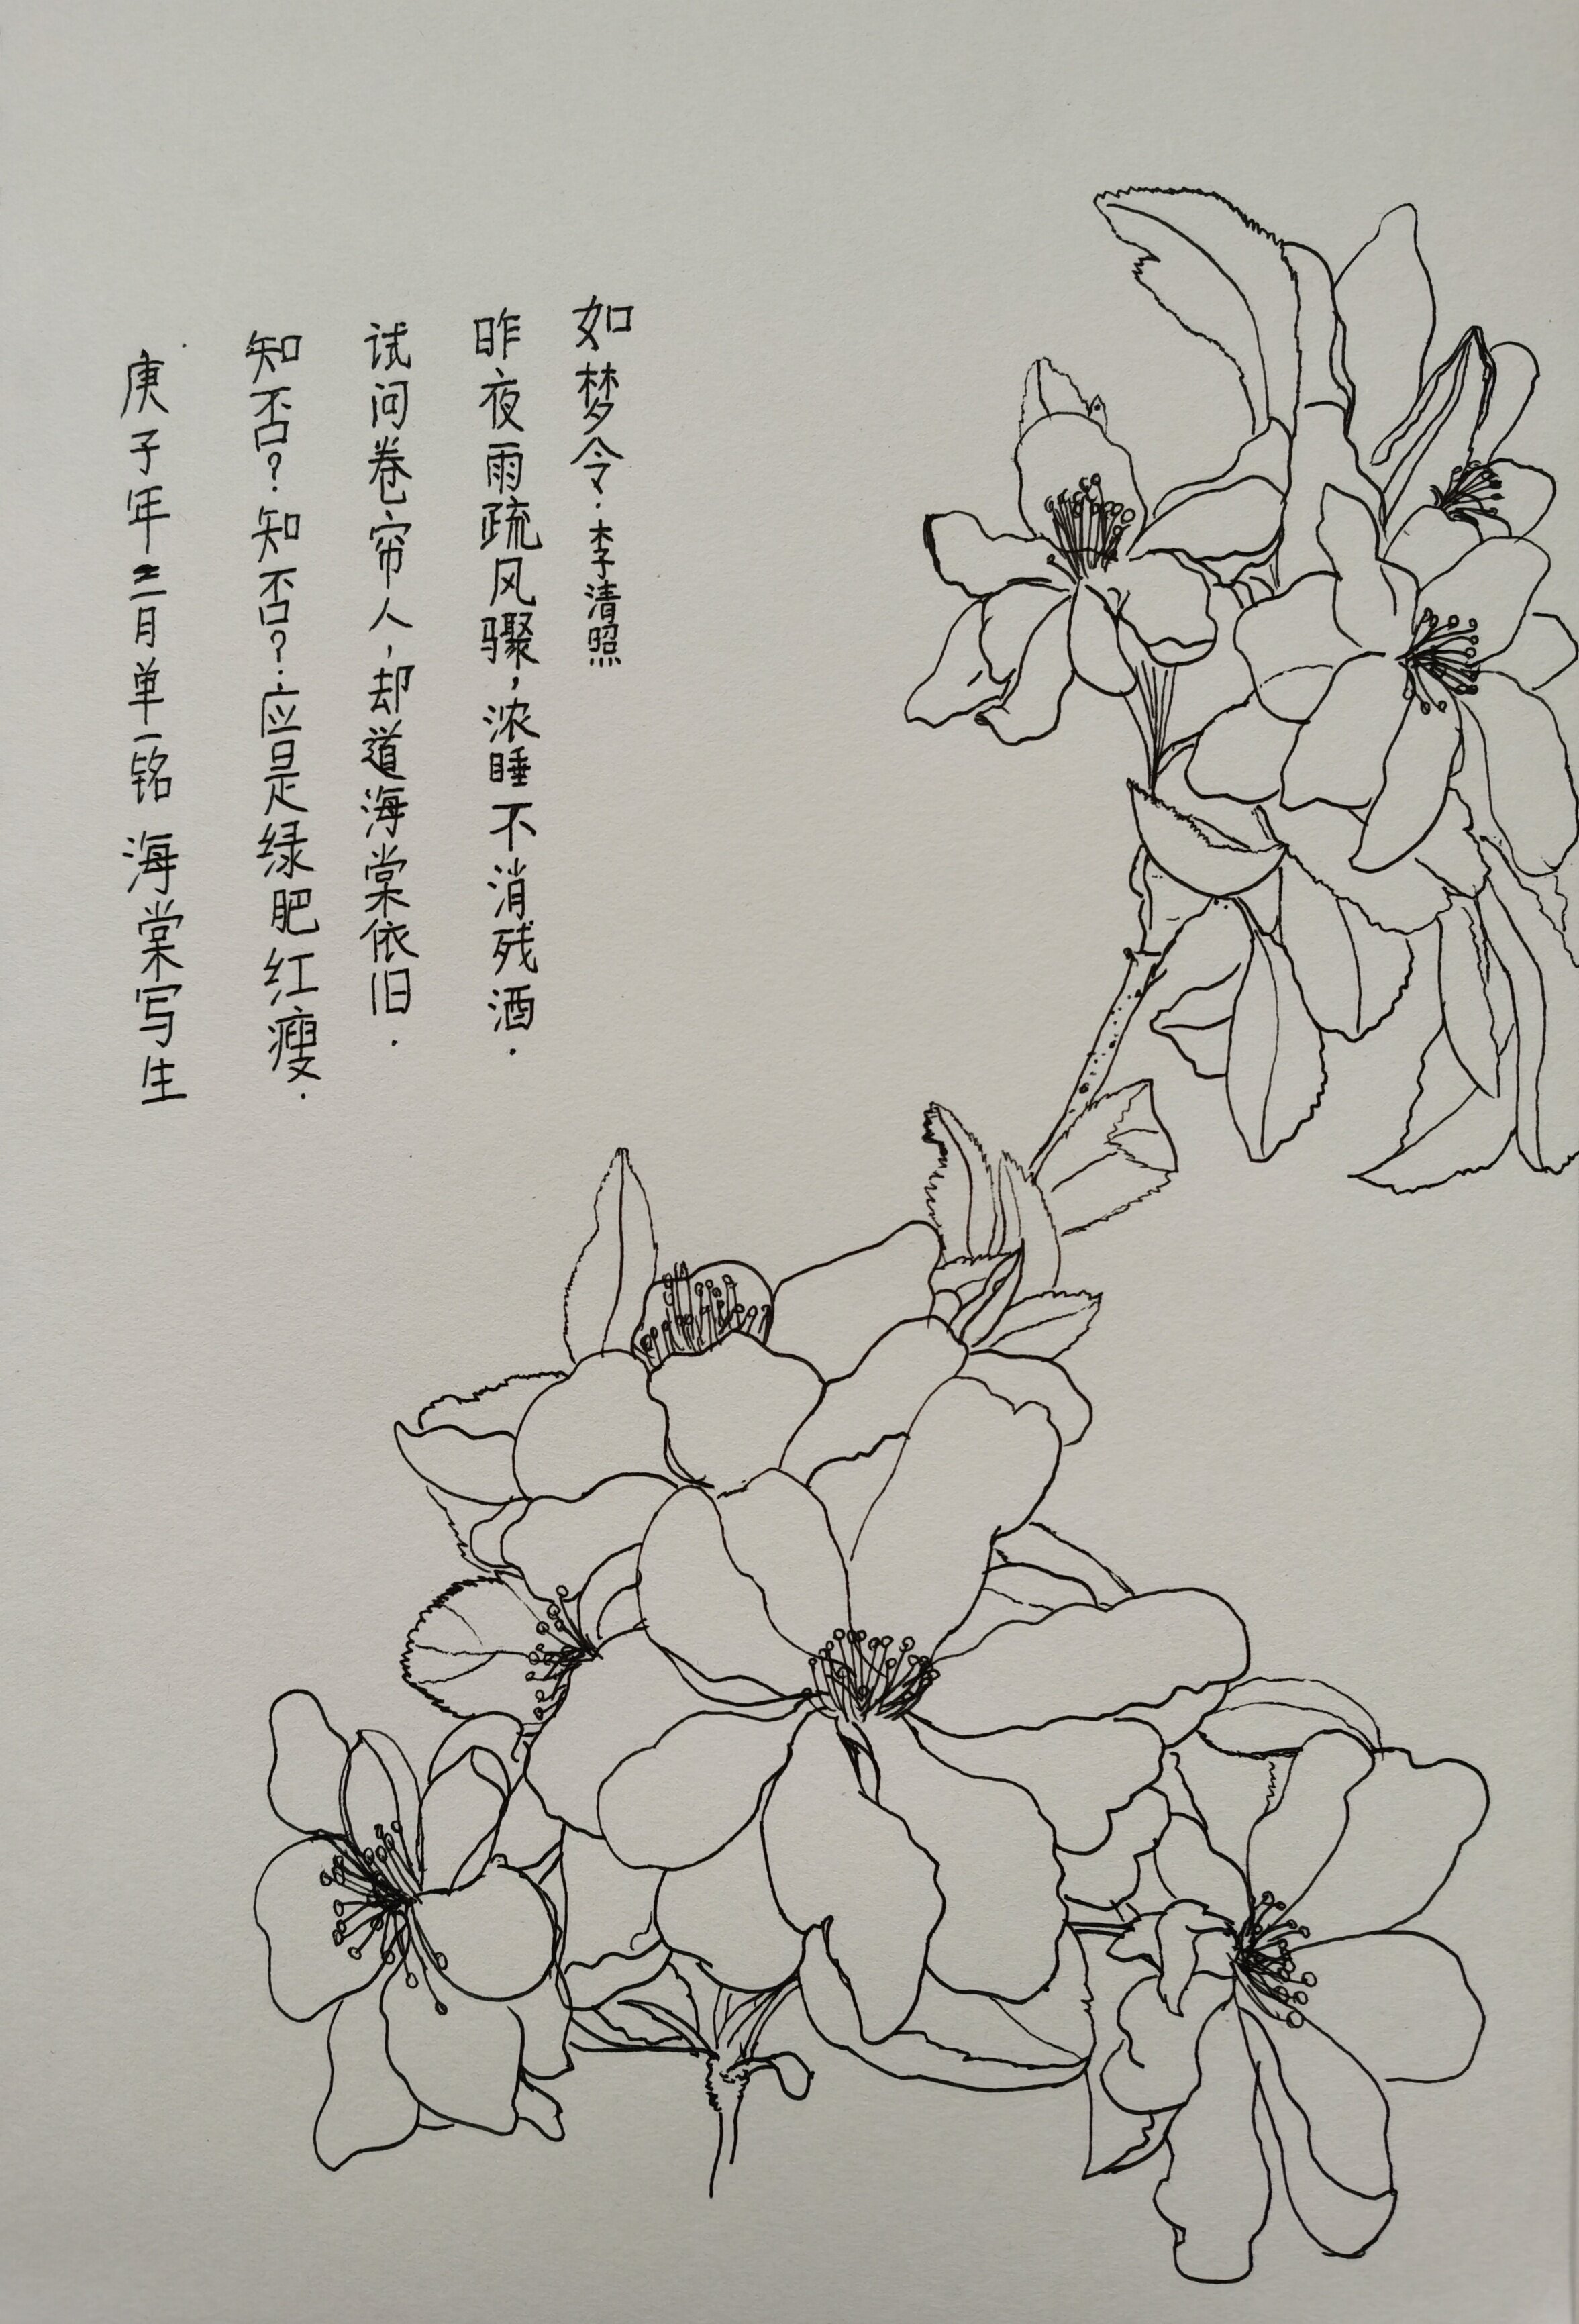 海棠树的简笔画图片